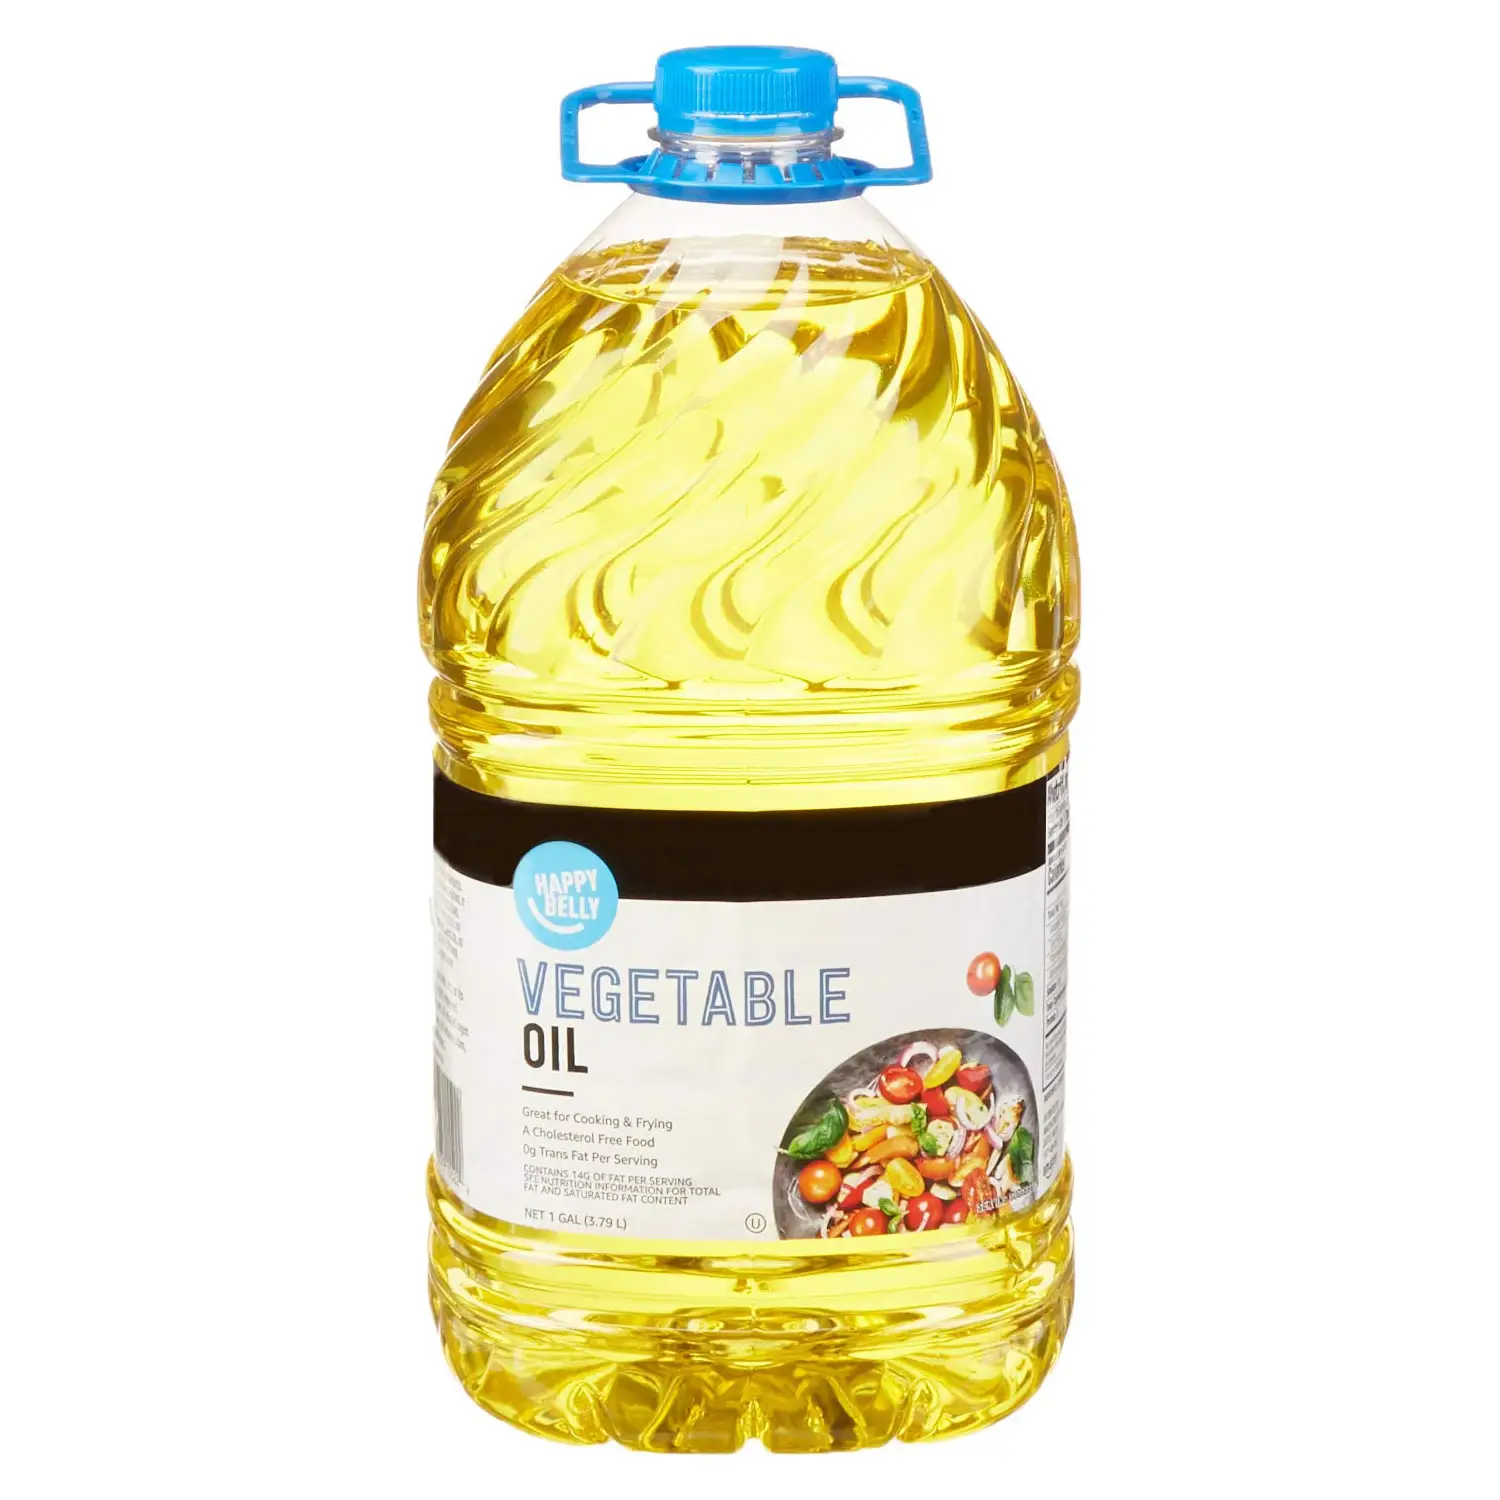 Nouvelle huile de soja végétale de qualité supérieure Happy Belly-128 FlOz (1 gallon) grossistes huile végétale à vendre